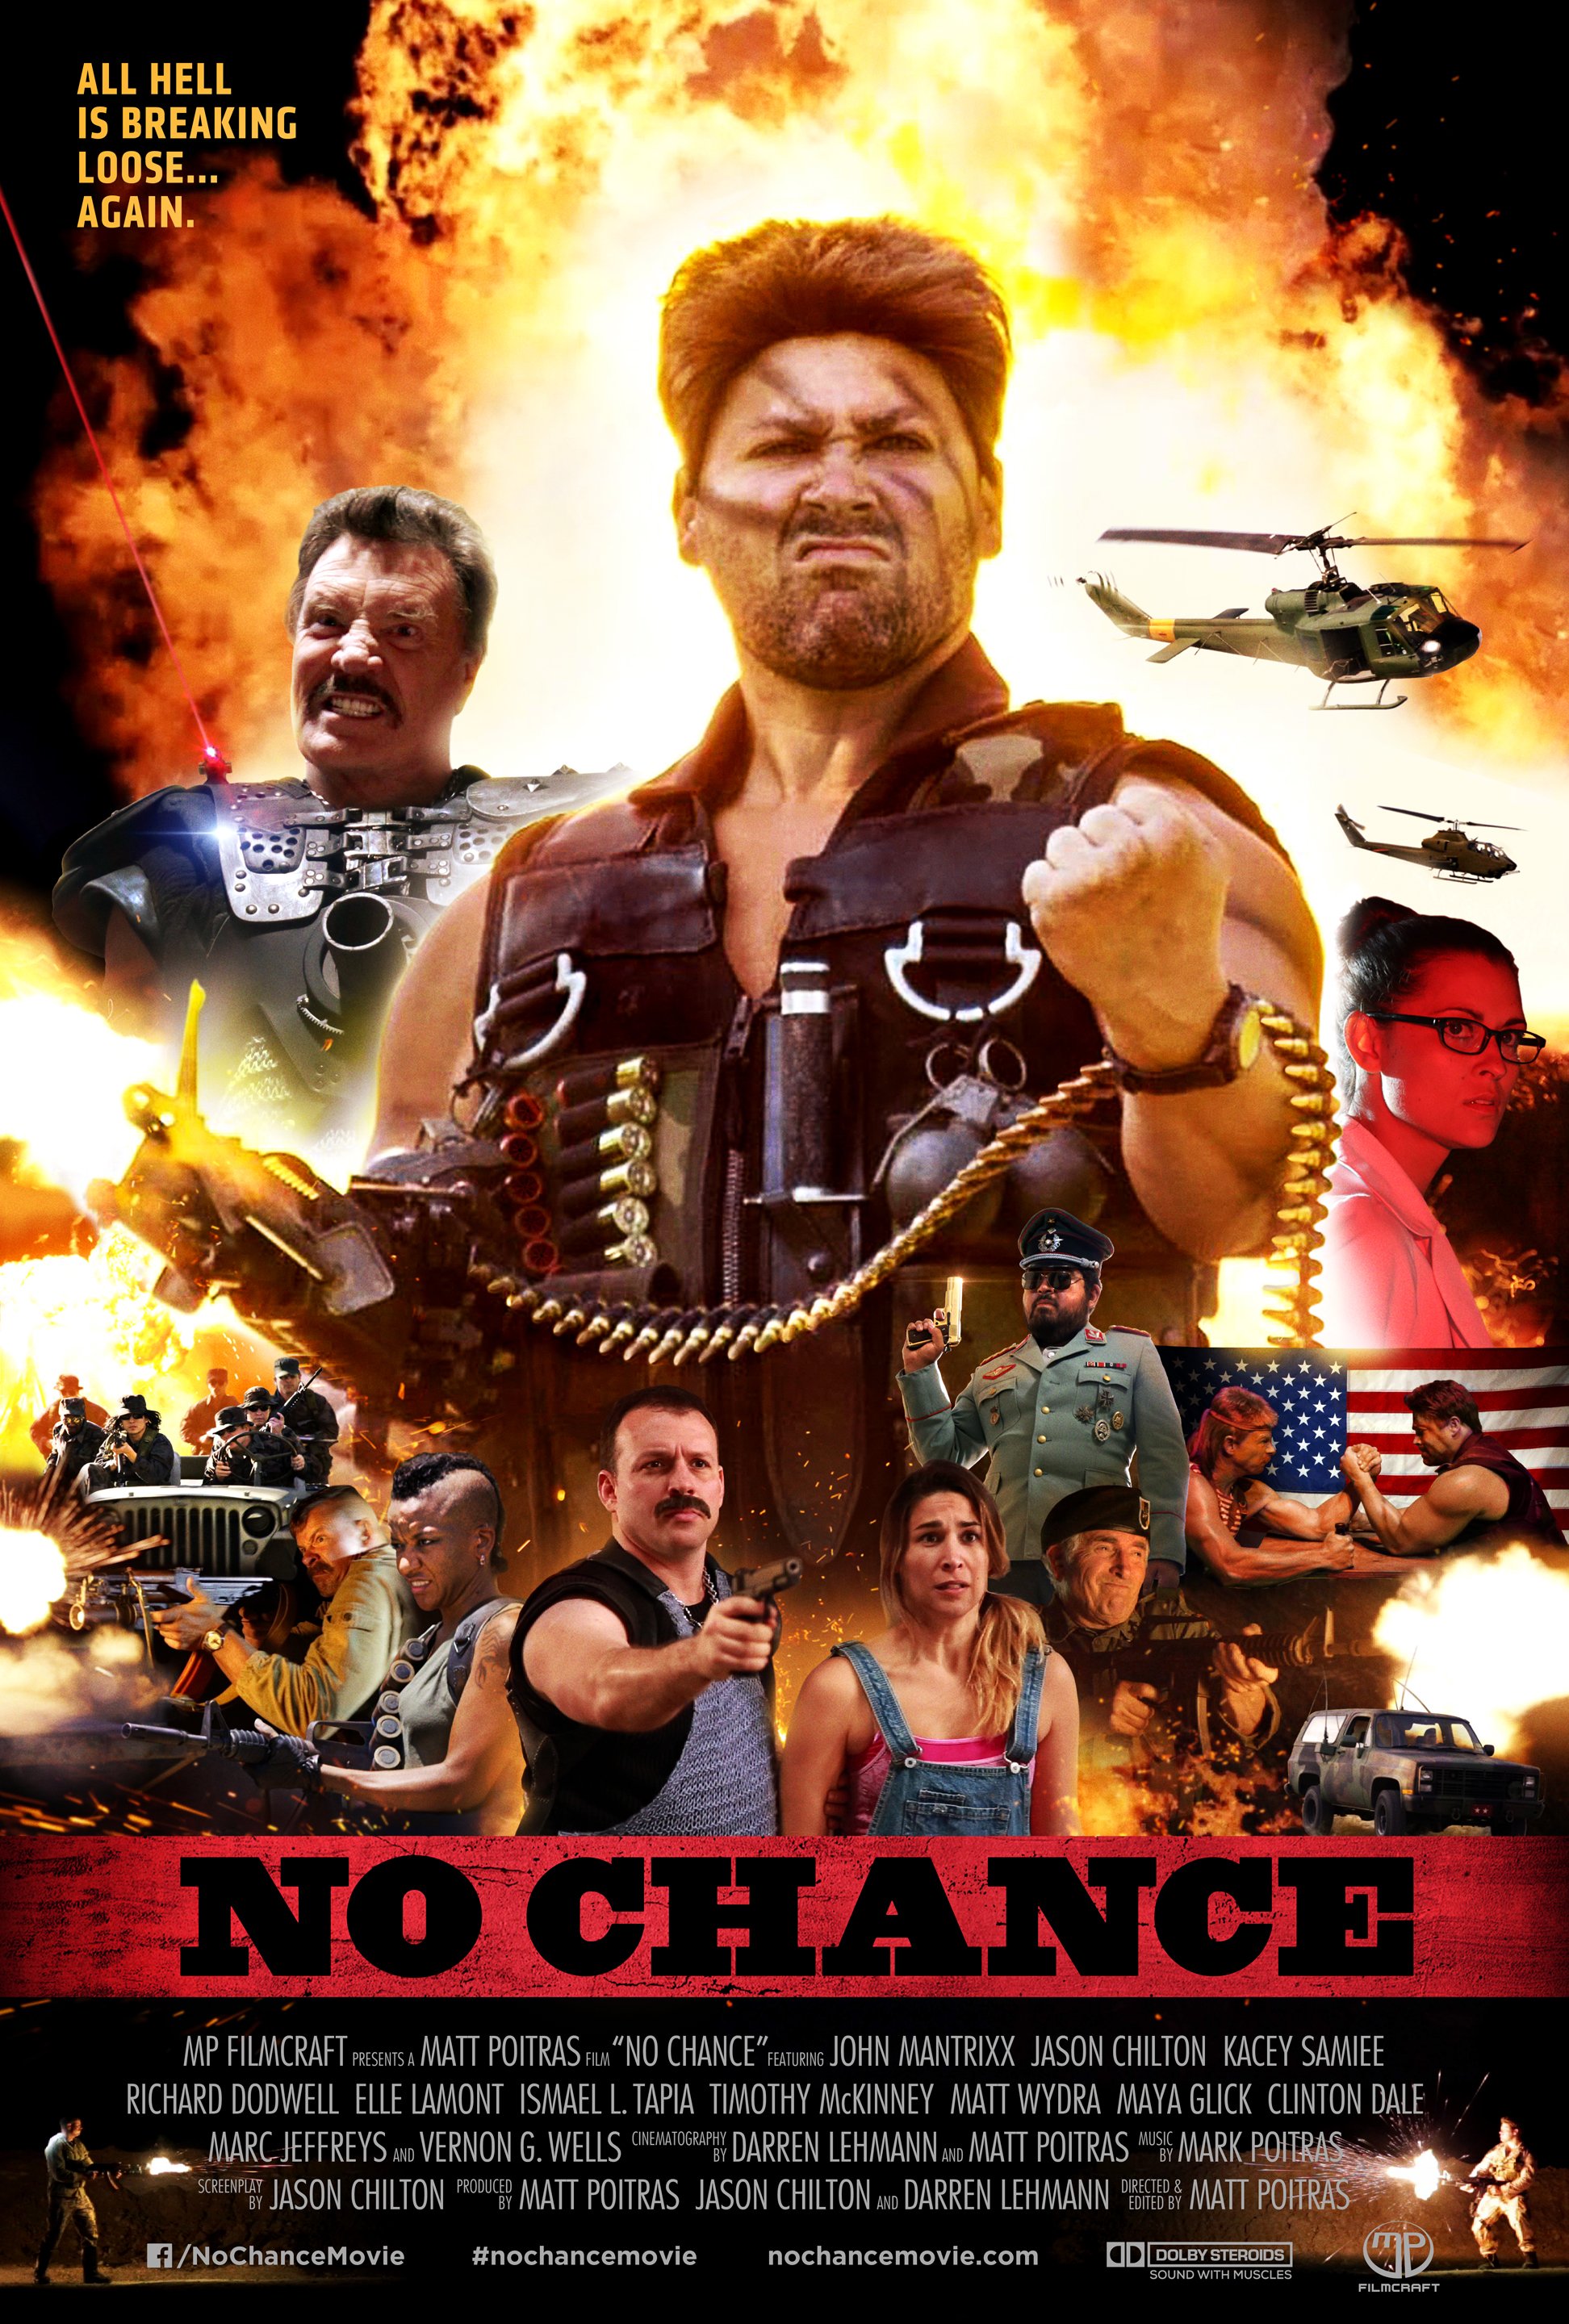 Nonton film No Chance layarkaca21 indoxx1 ganool online streaming terbaru